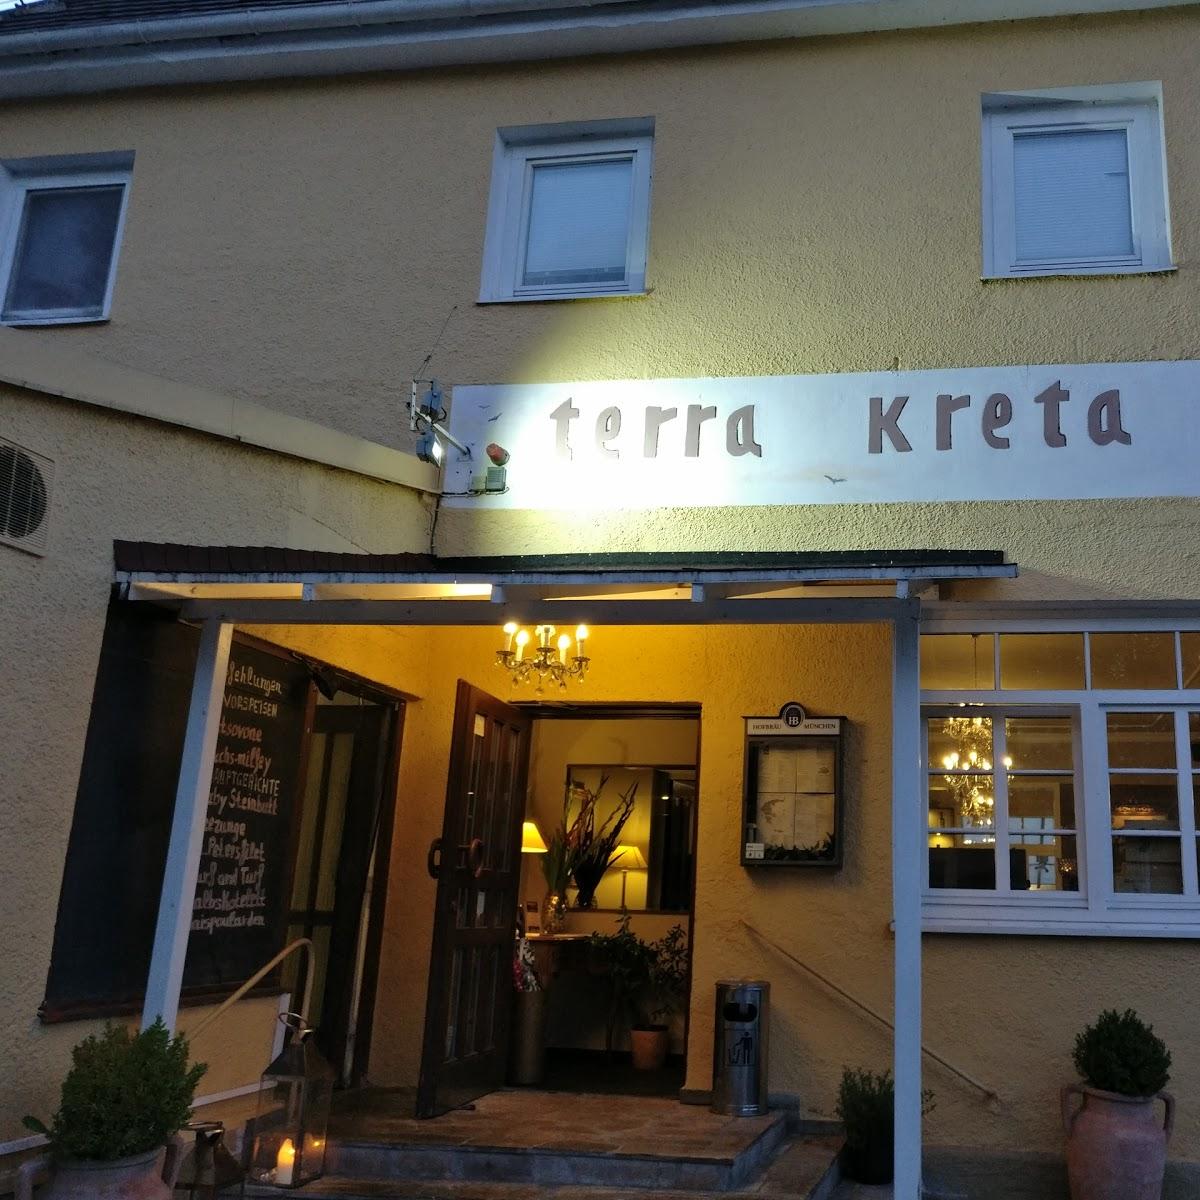 Restaurant "Terra Kreta (Griechisches Restaurant)" in München